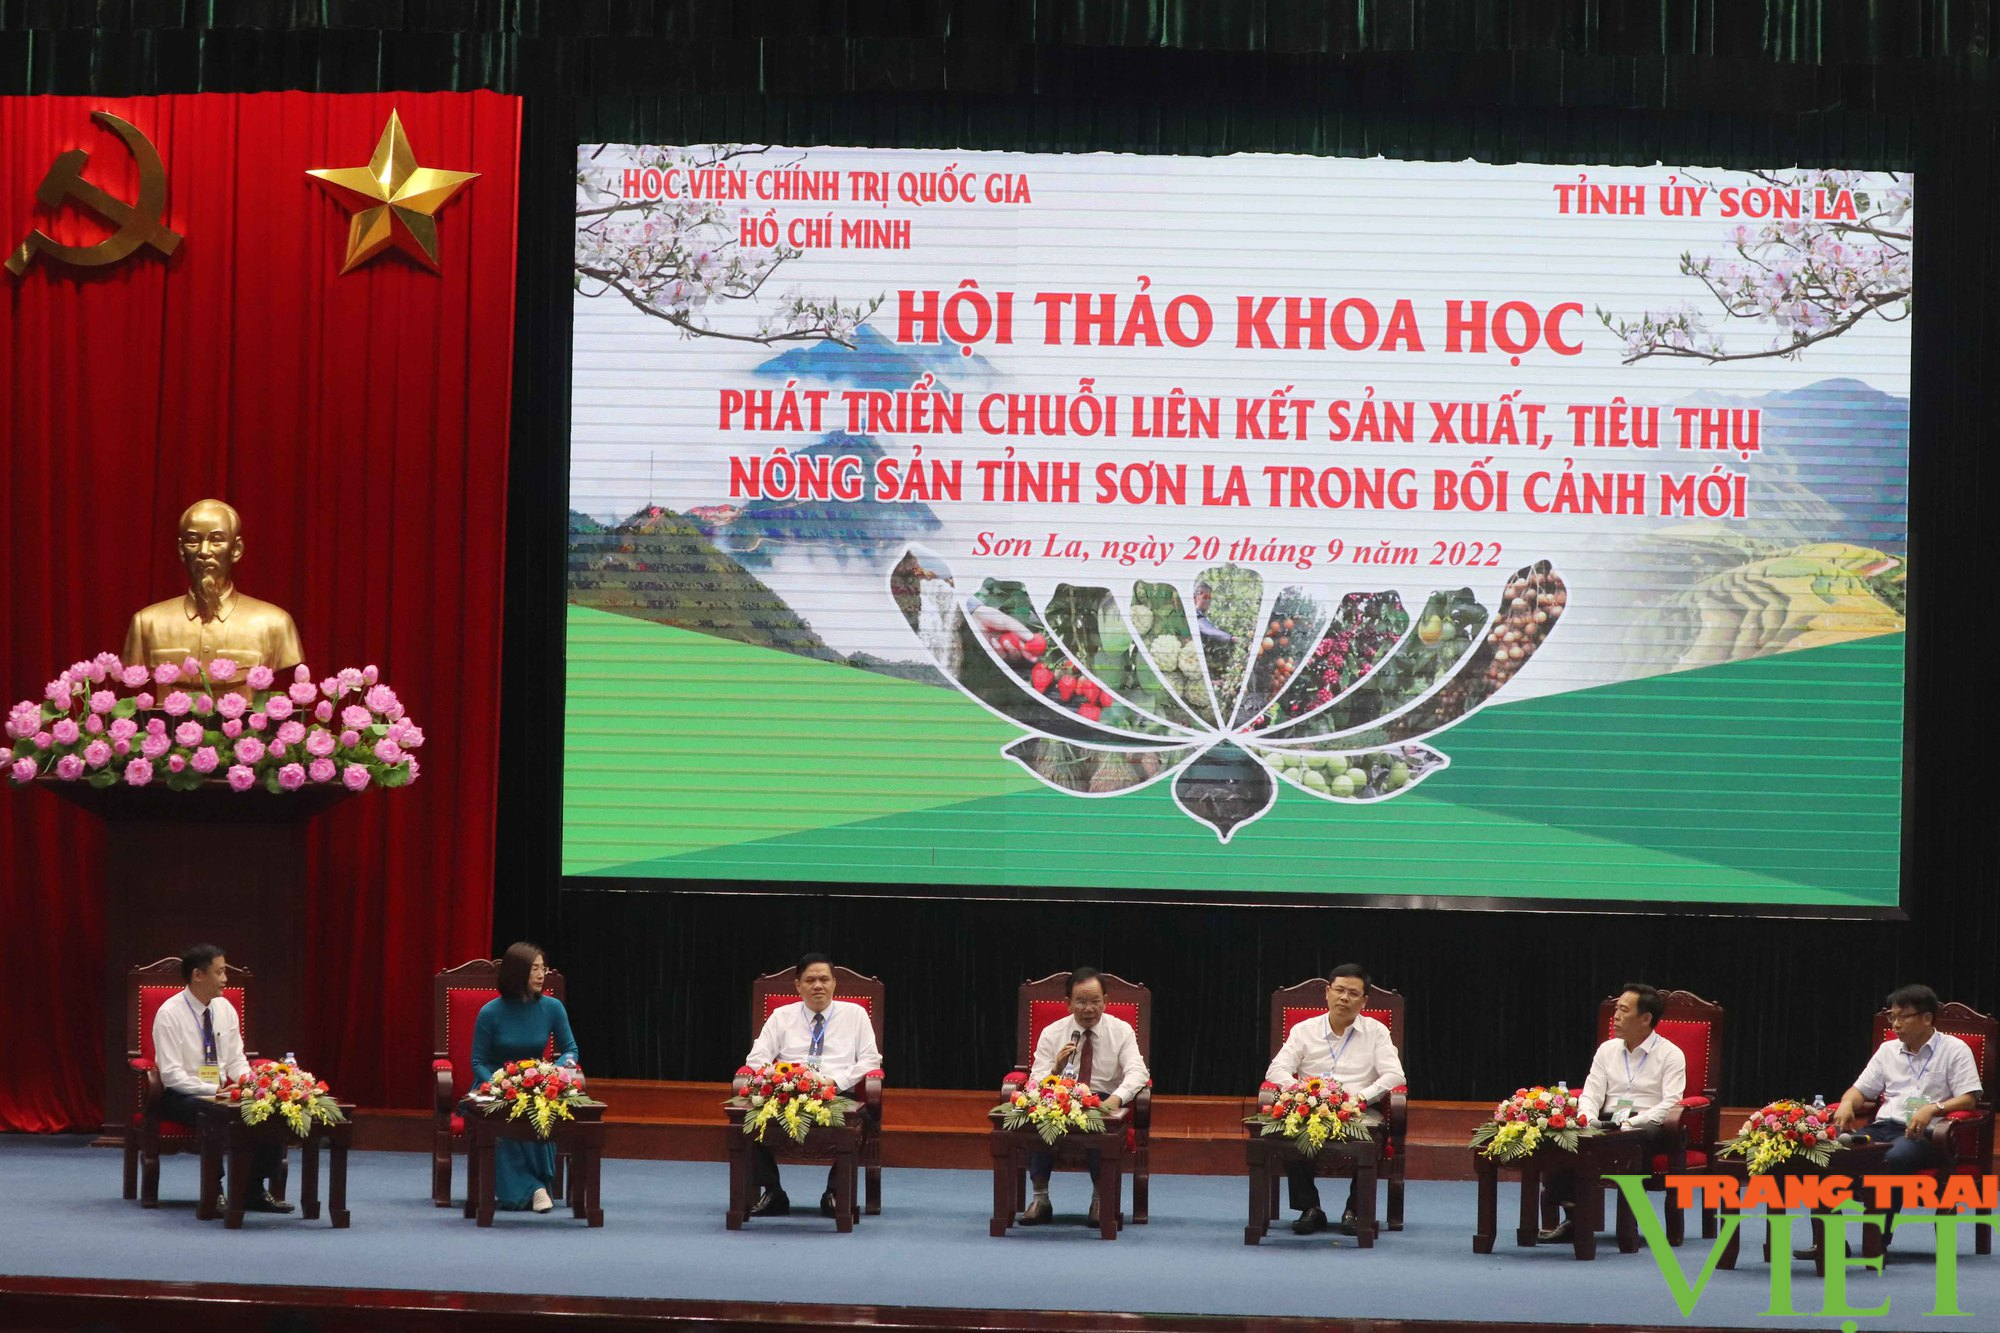 Bàn giải pháp phát triển chuỗi liên kết sản xuất, tiêu thụ nông sản tỉnh Sơn La trong bối cảnh mới - Ảnh 5.